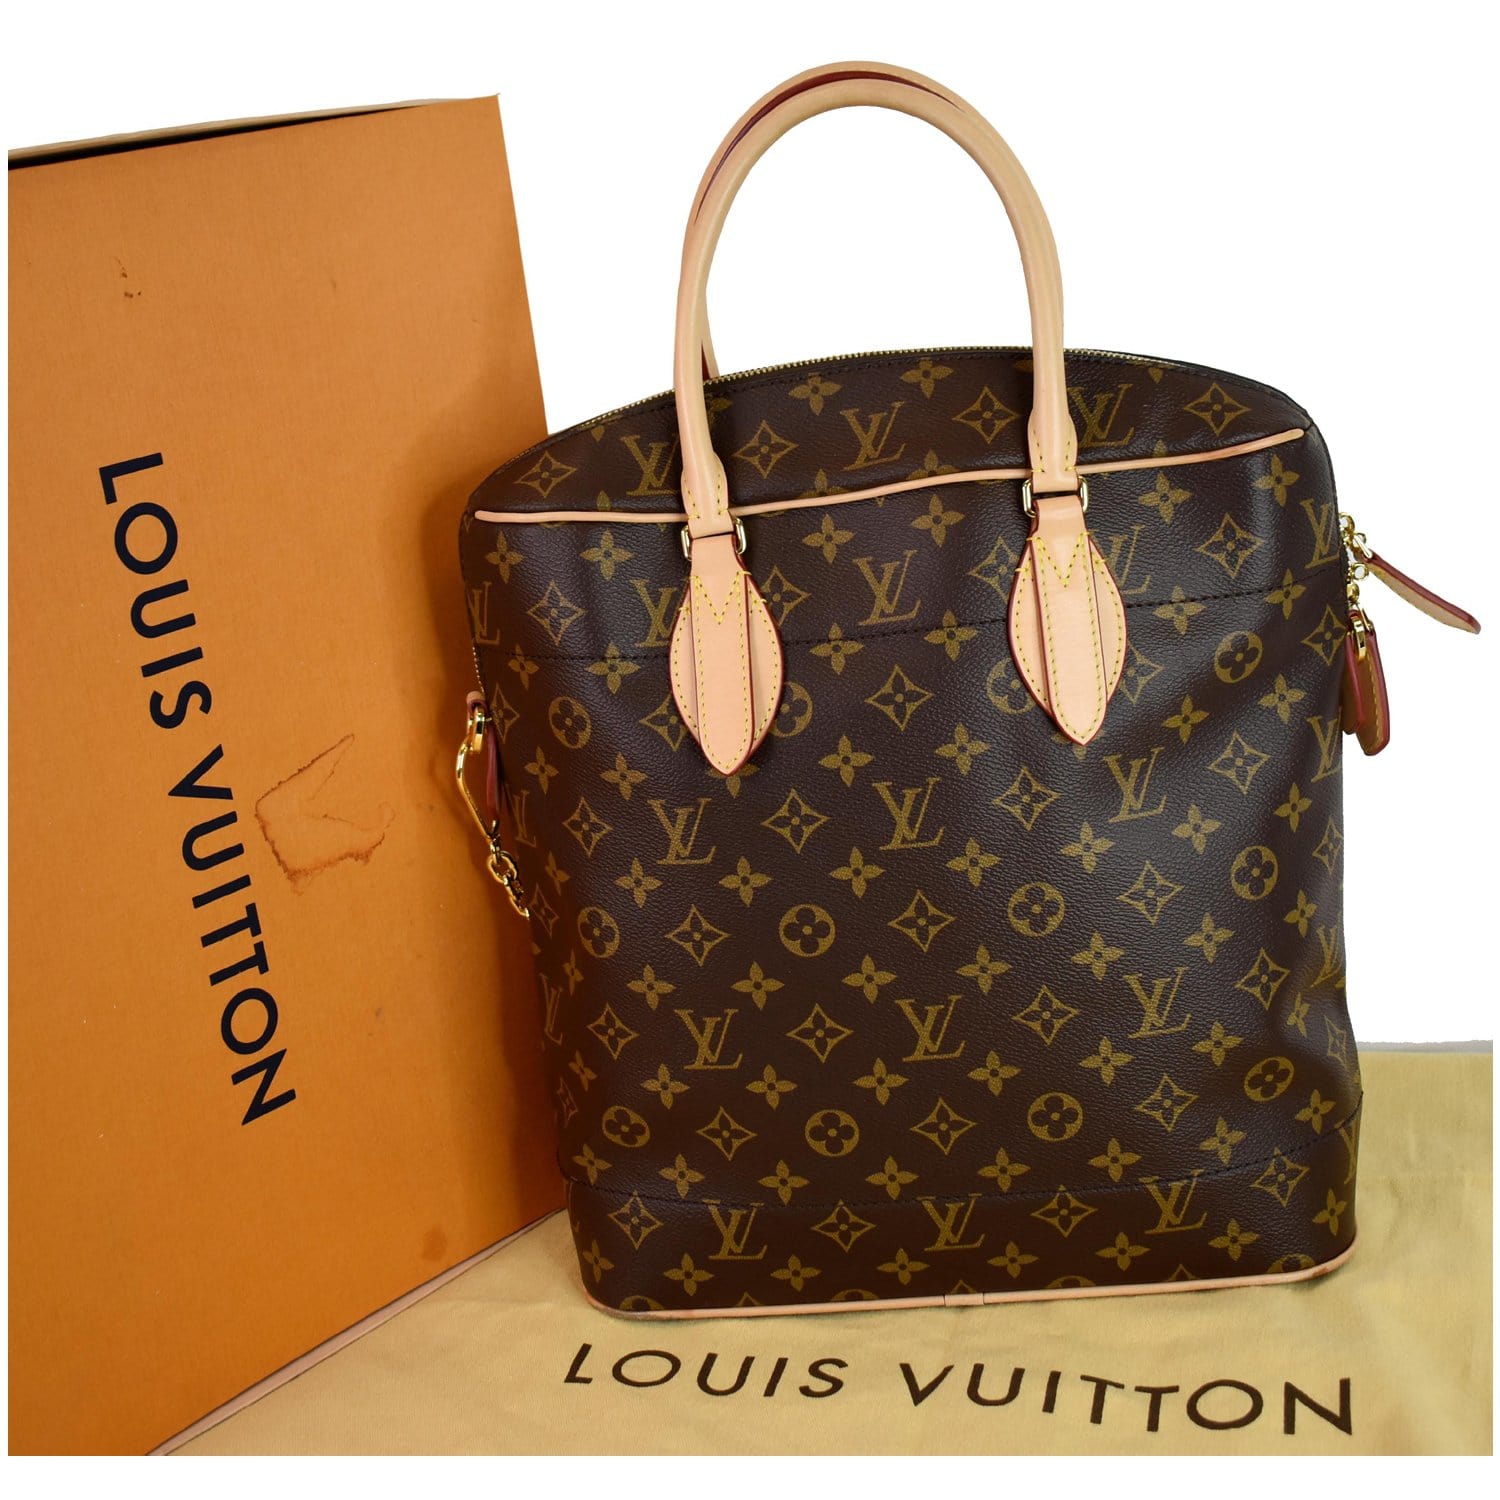 Louis Vuitton Carry All Womens Handbags